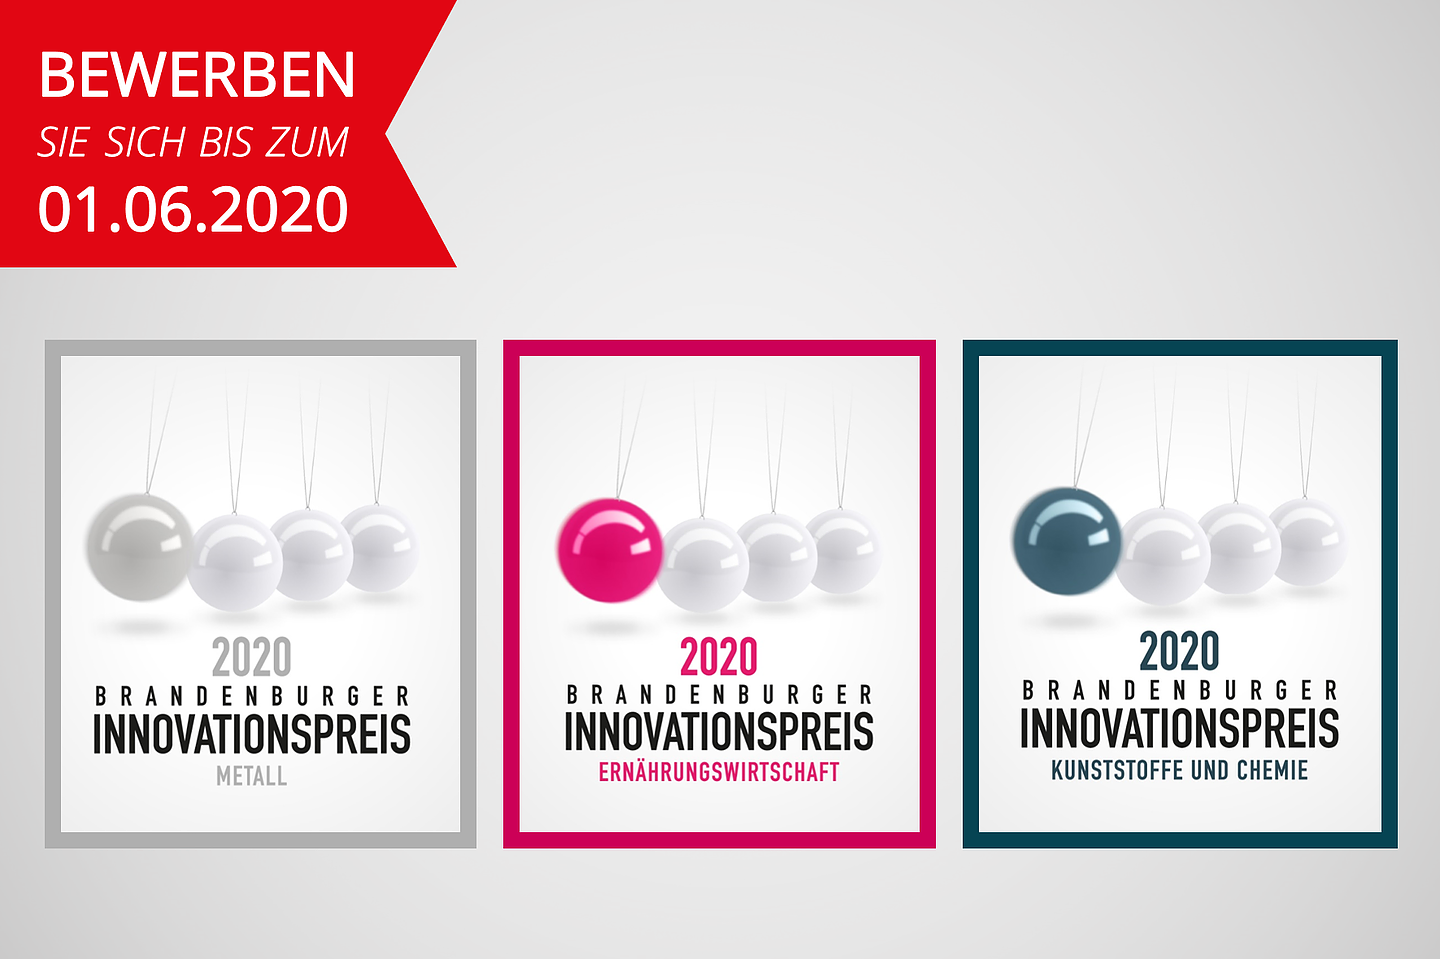 Brandenburger Innovationspreis 2020